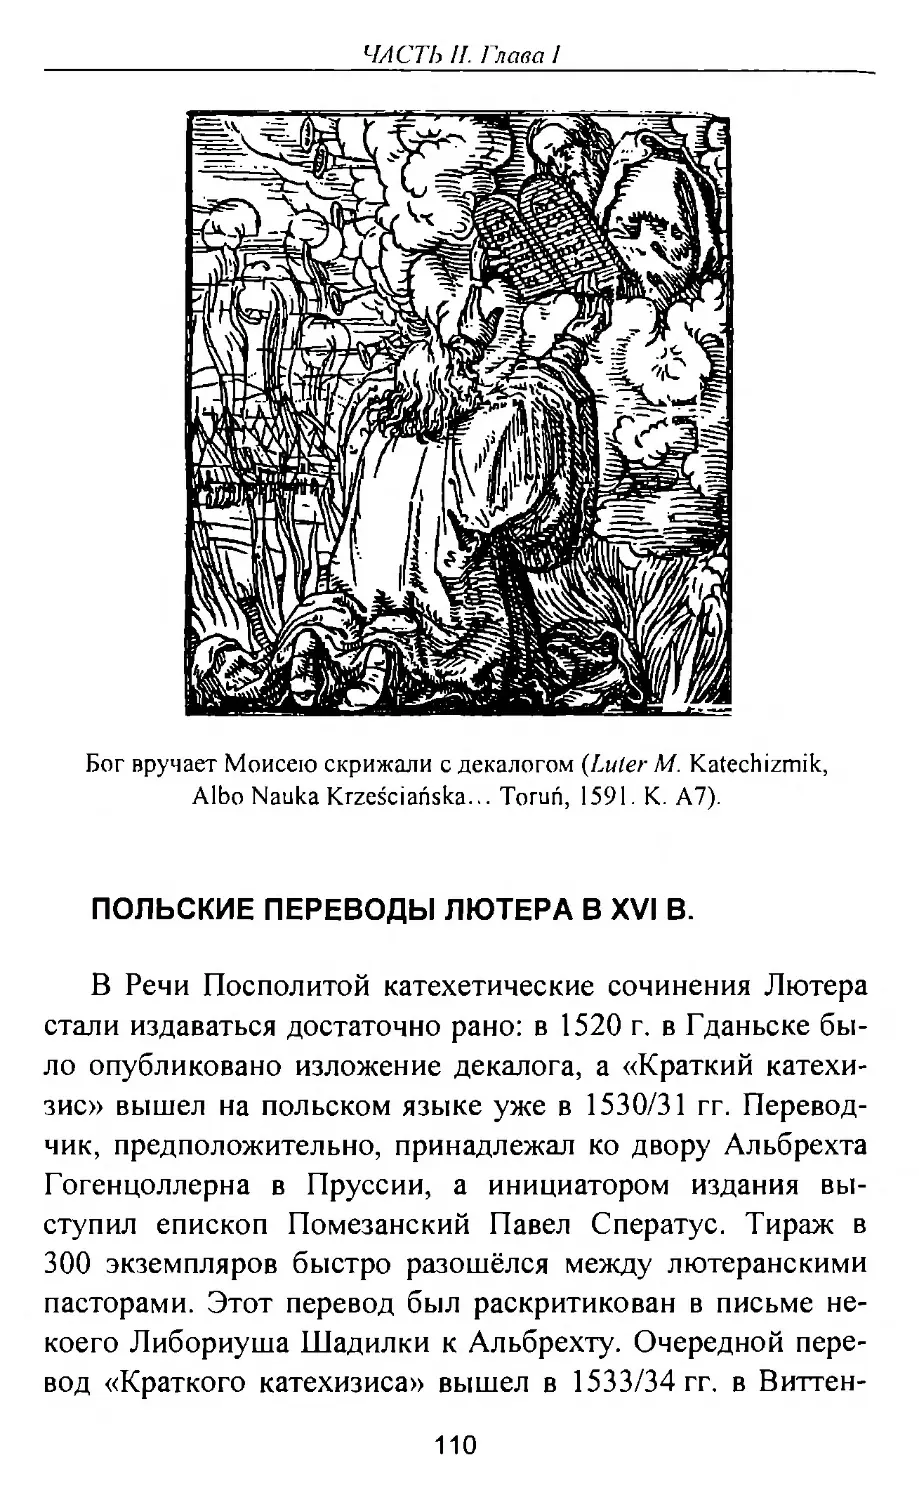 Польские переводы Лютера XVI в.